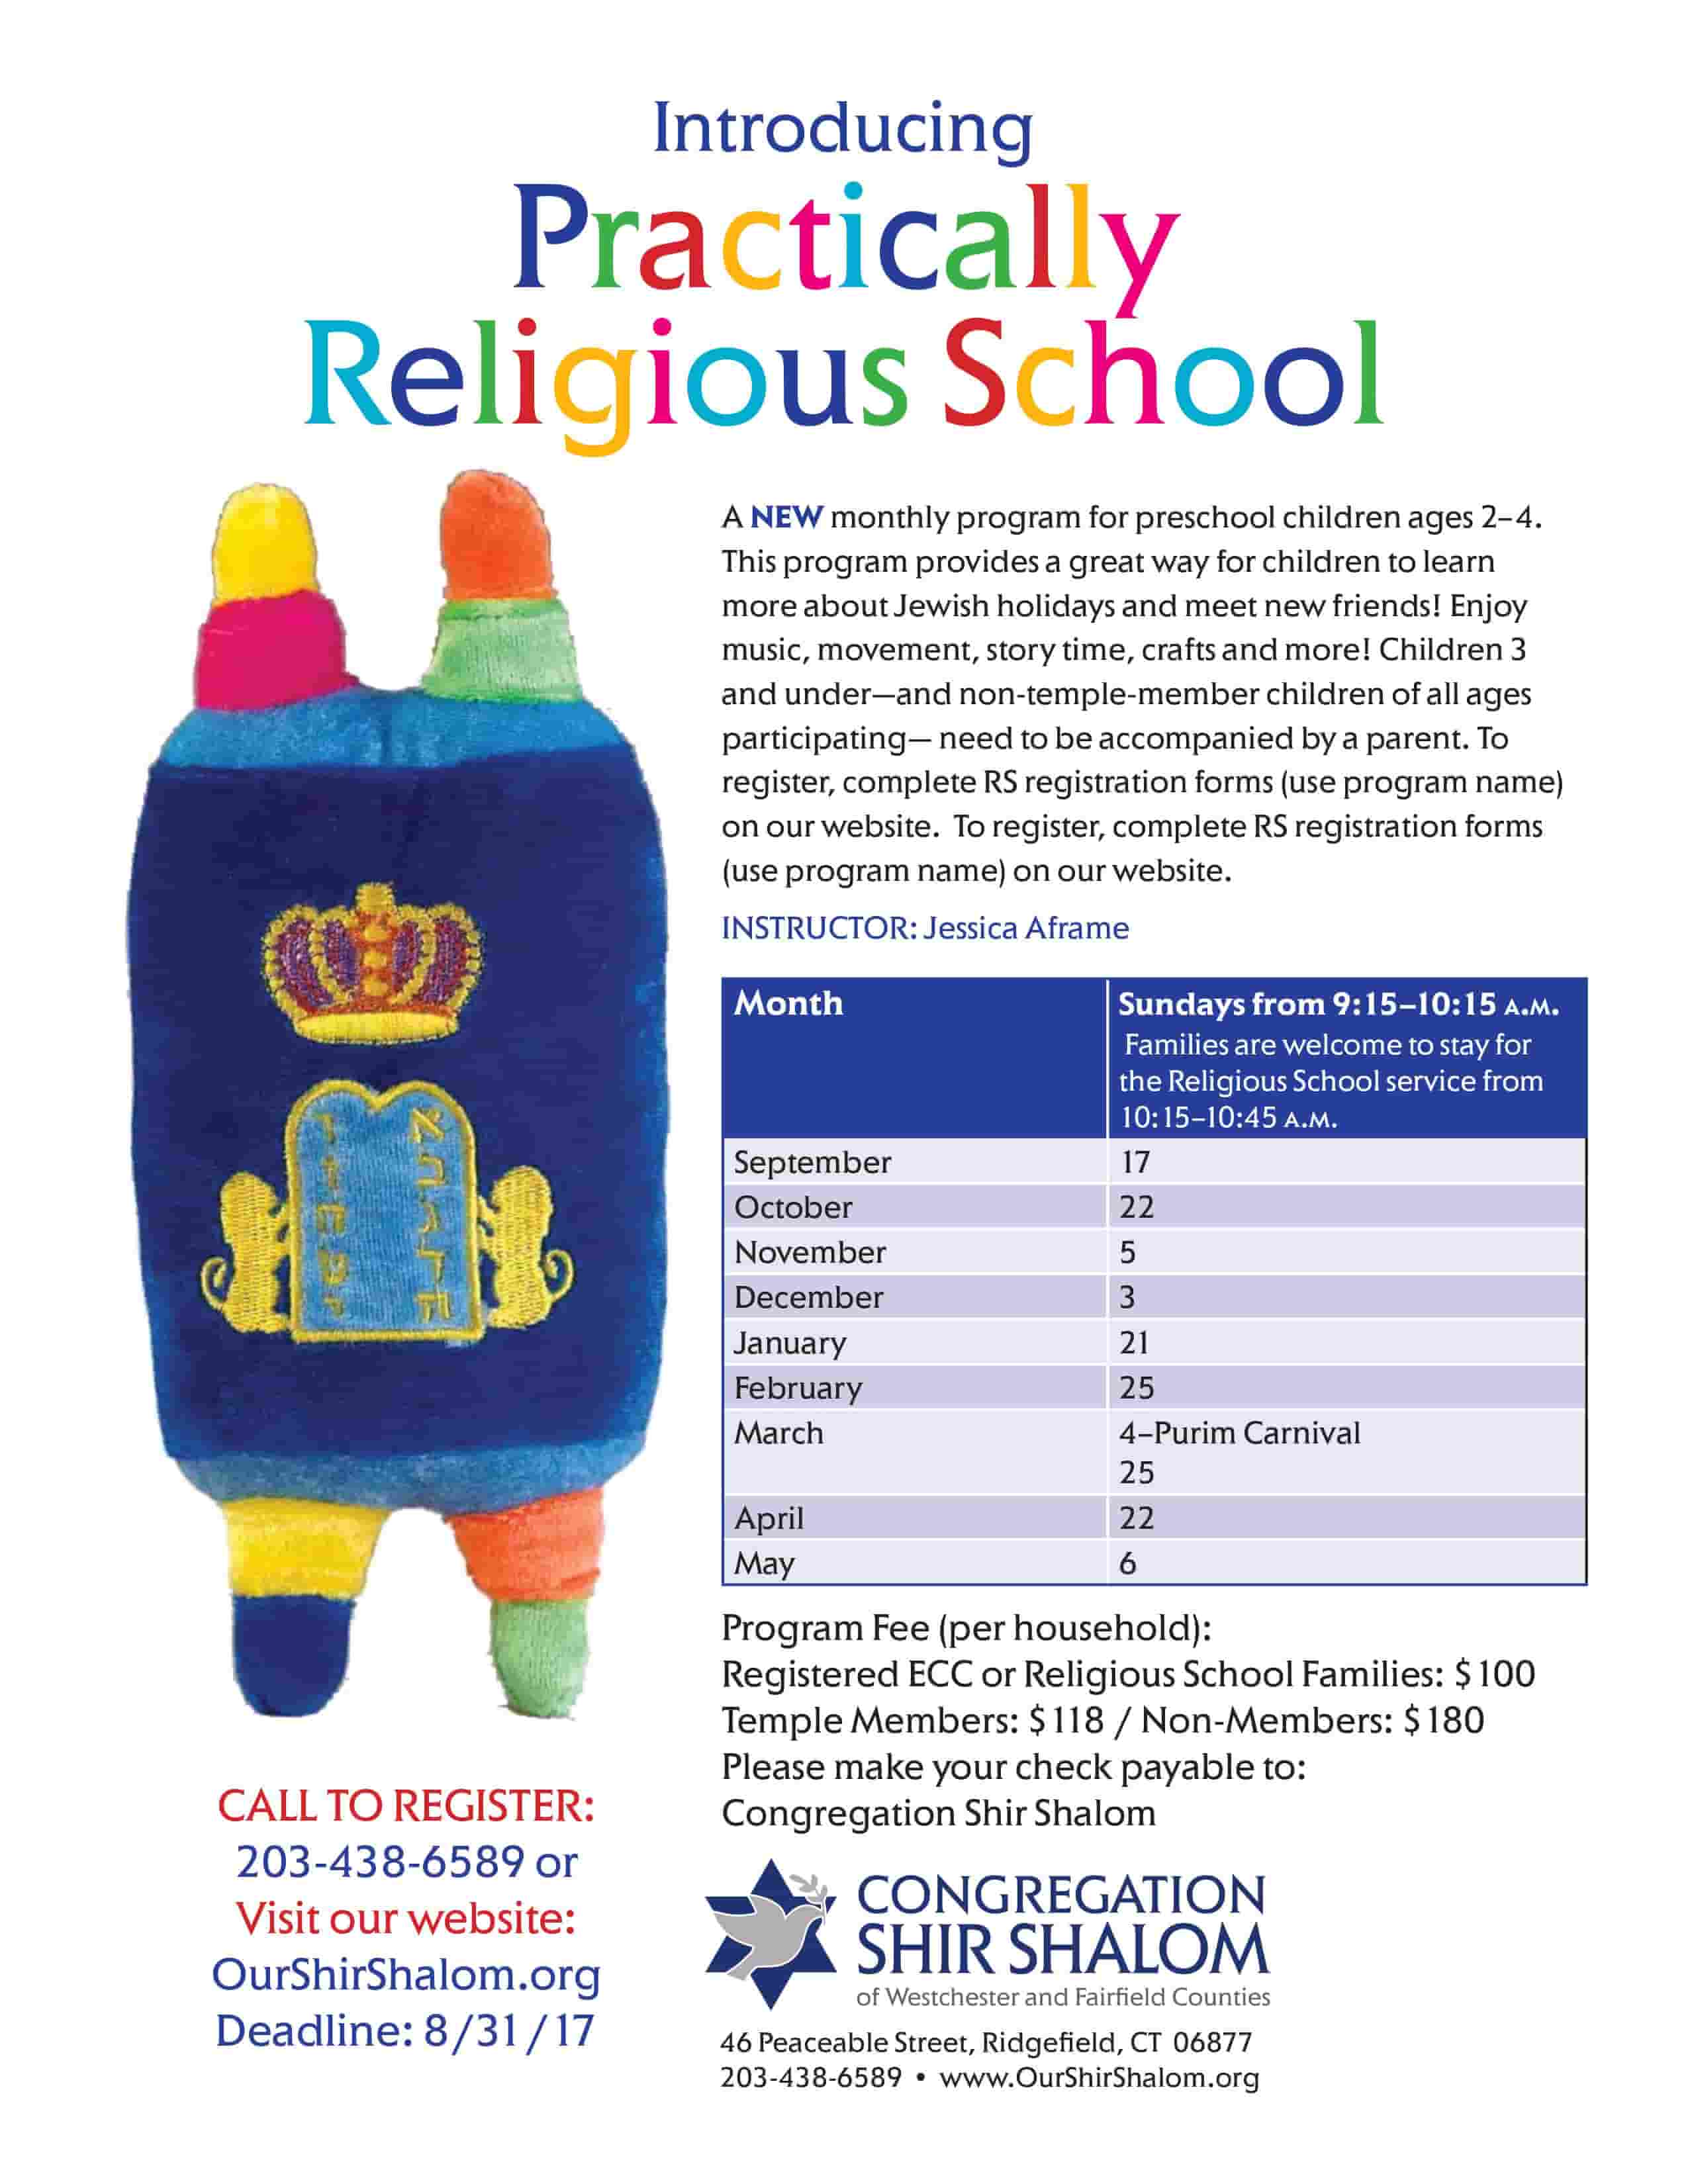 Practically Religious school ad flyer